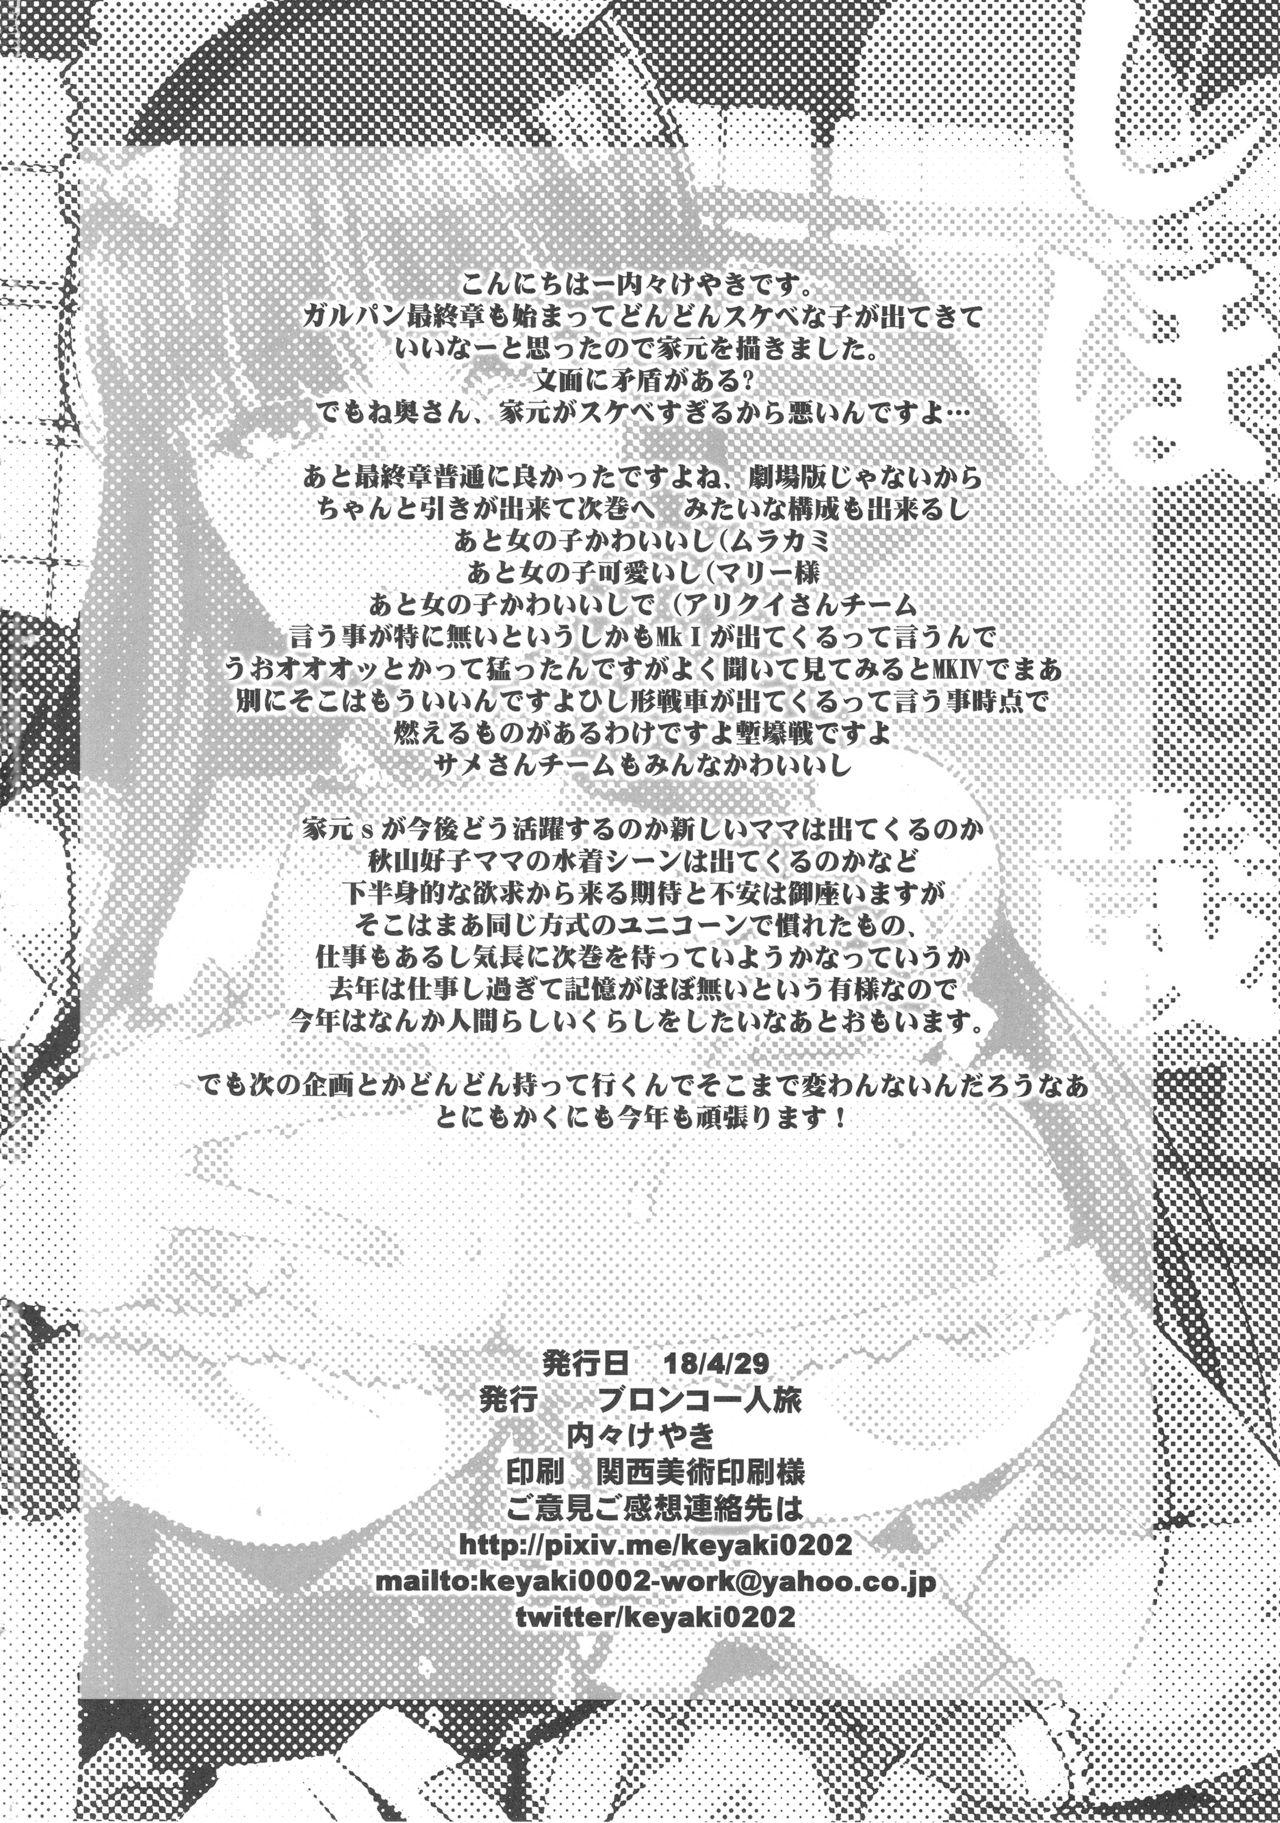 Kanzen Shirouto Bijukujo Debut Shiho 40-sai 40